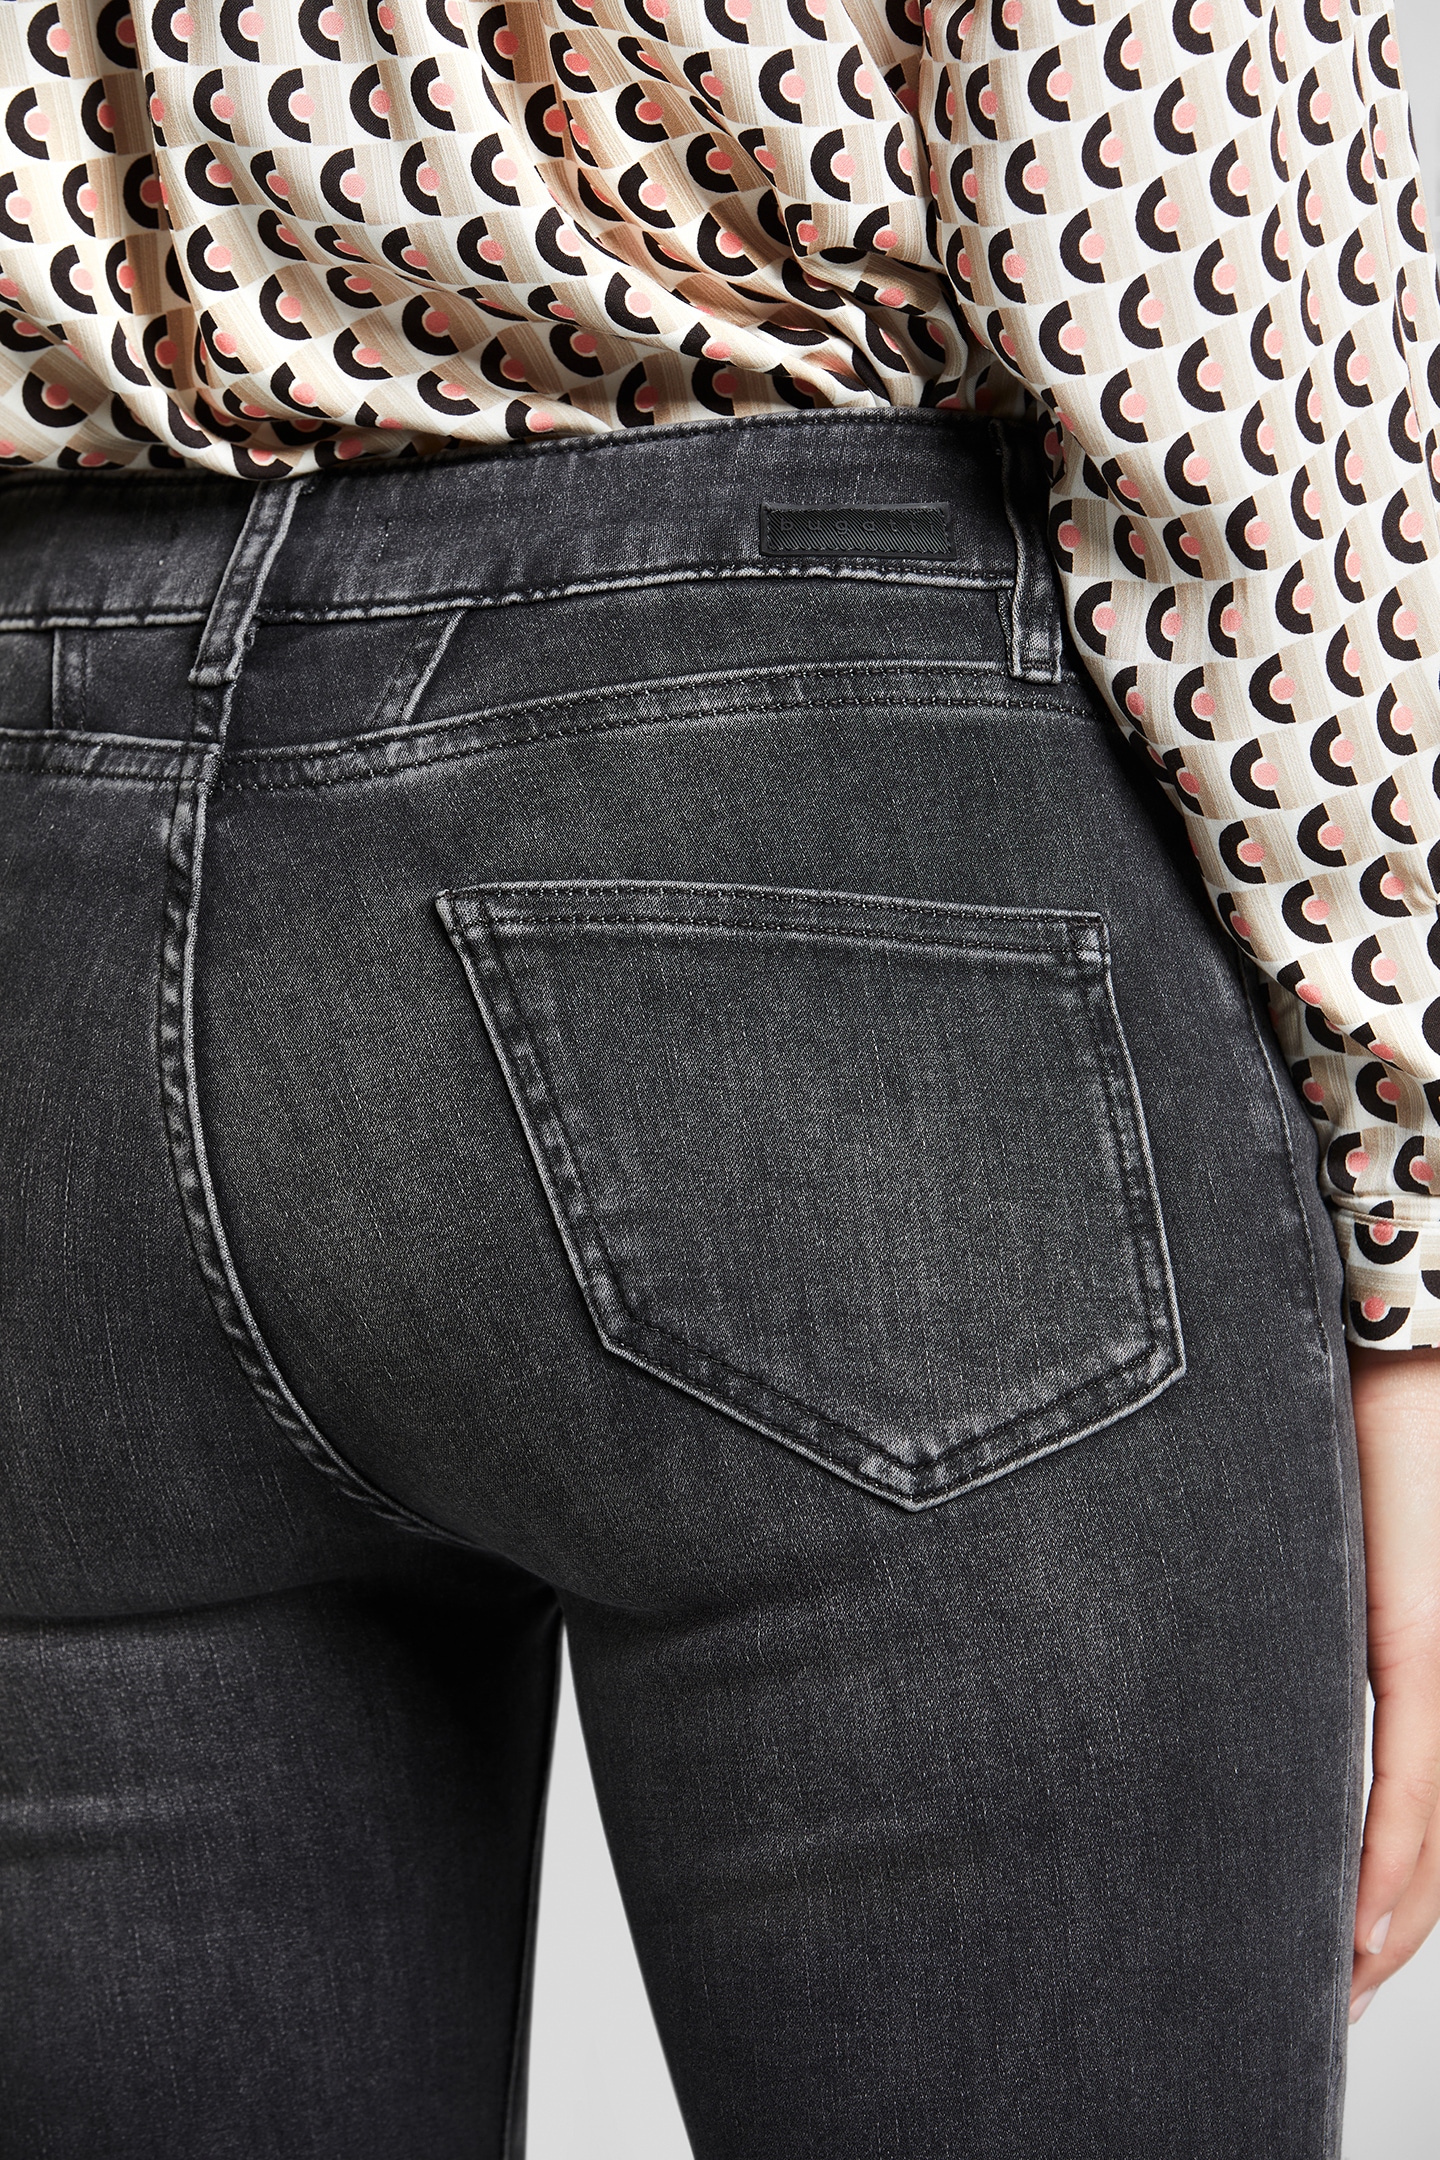 bugatti 5-Pocket-Jeans, leichte Used-Waschung bei ♕